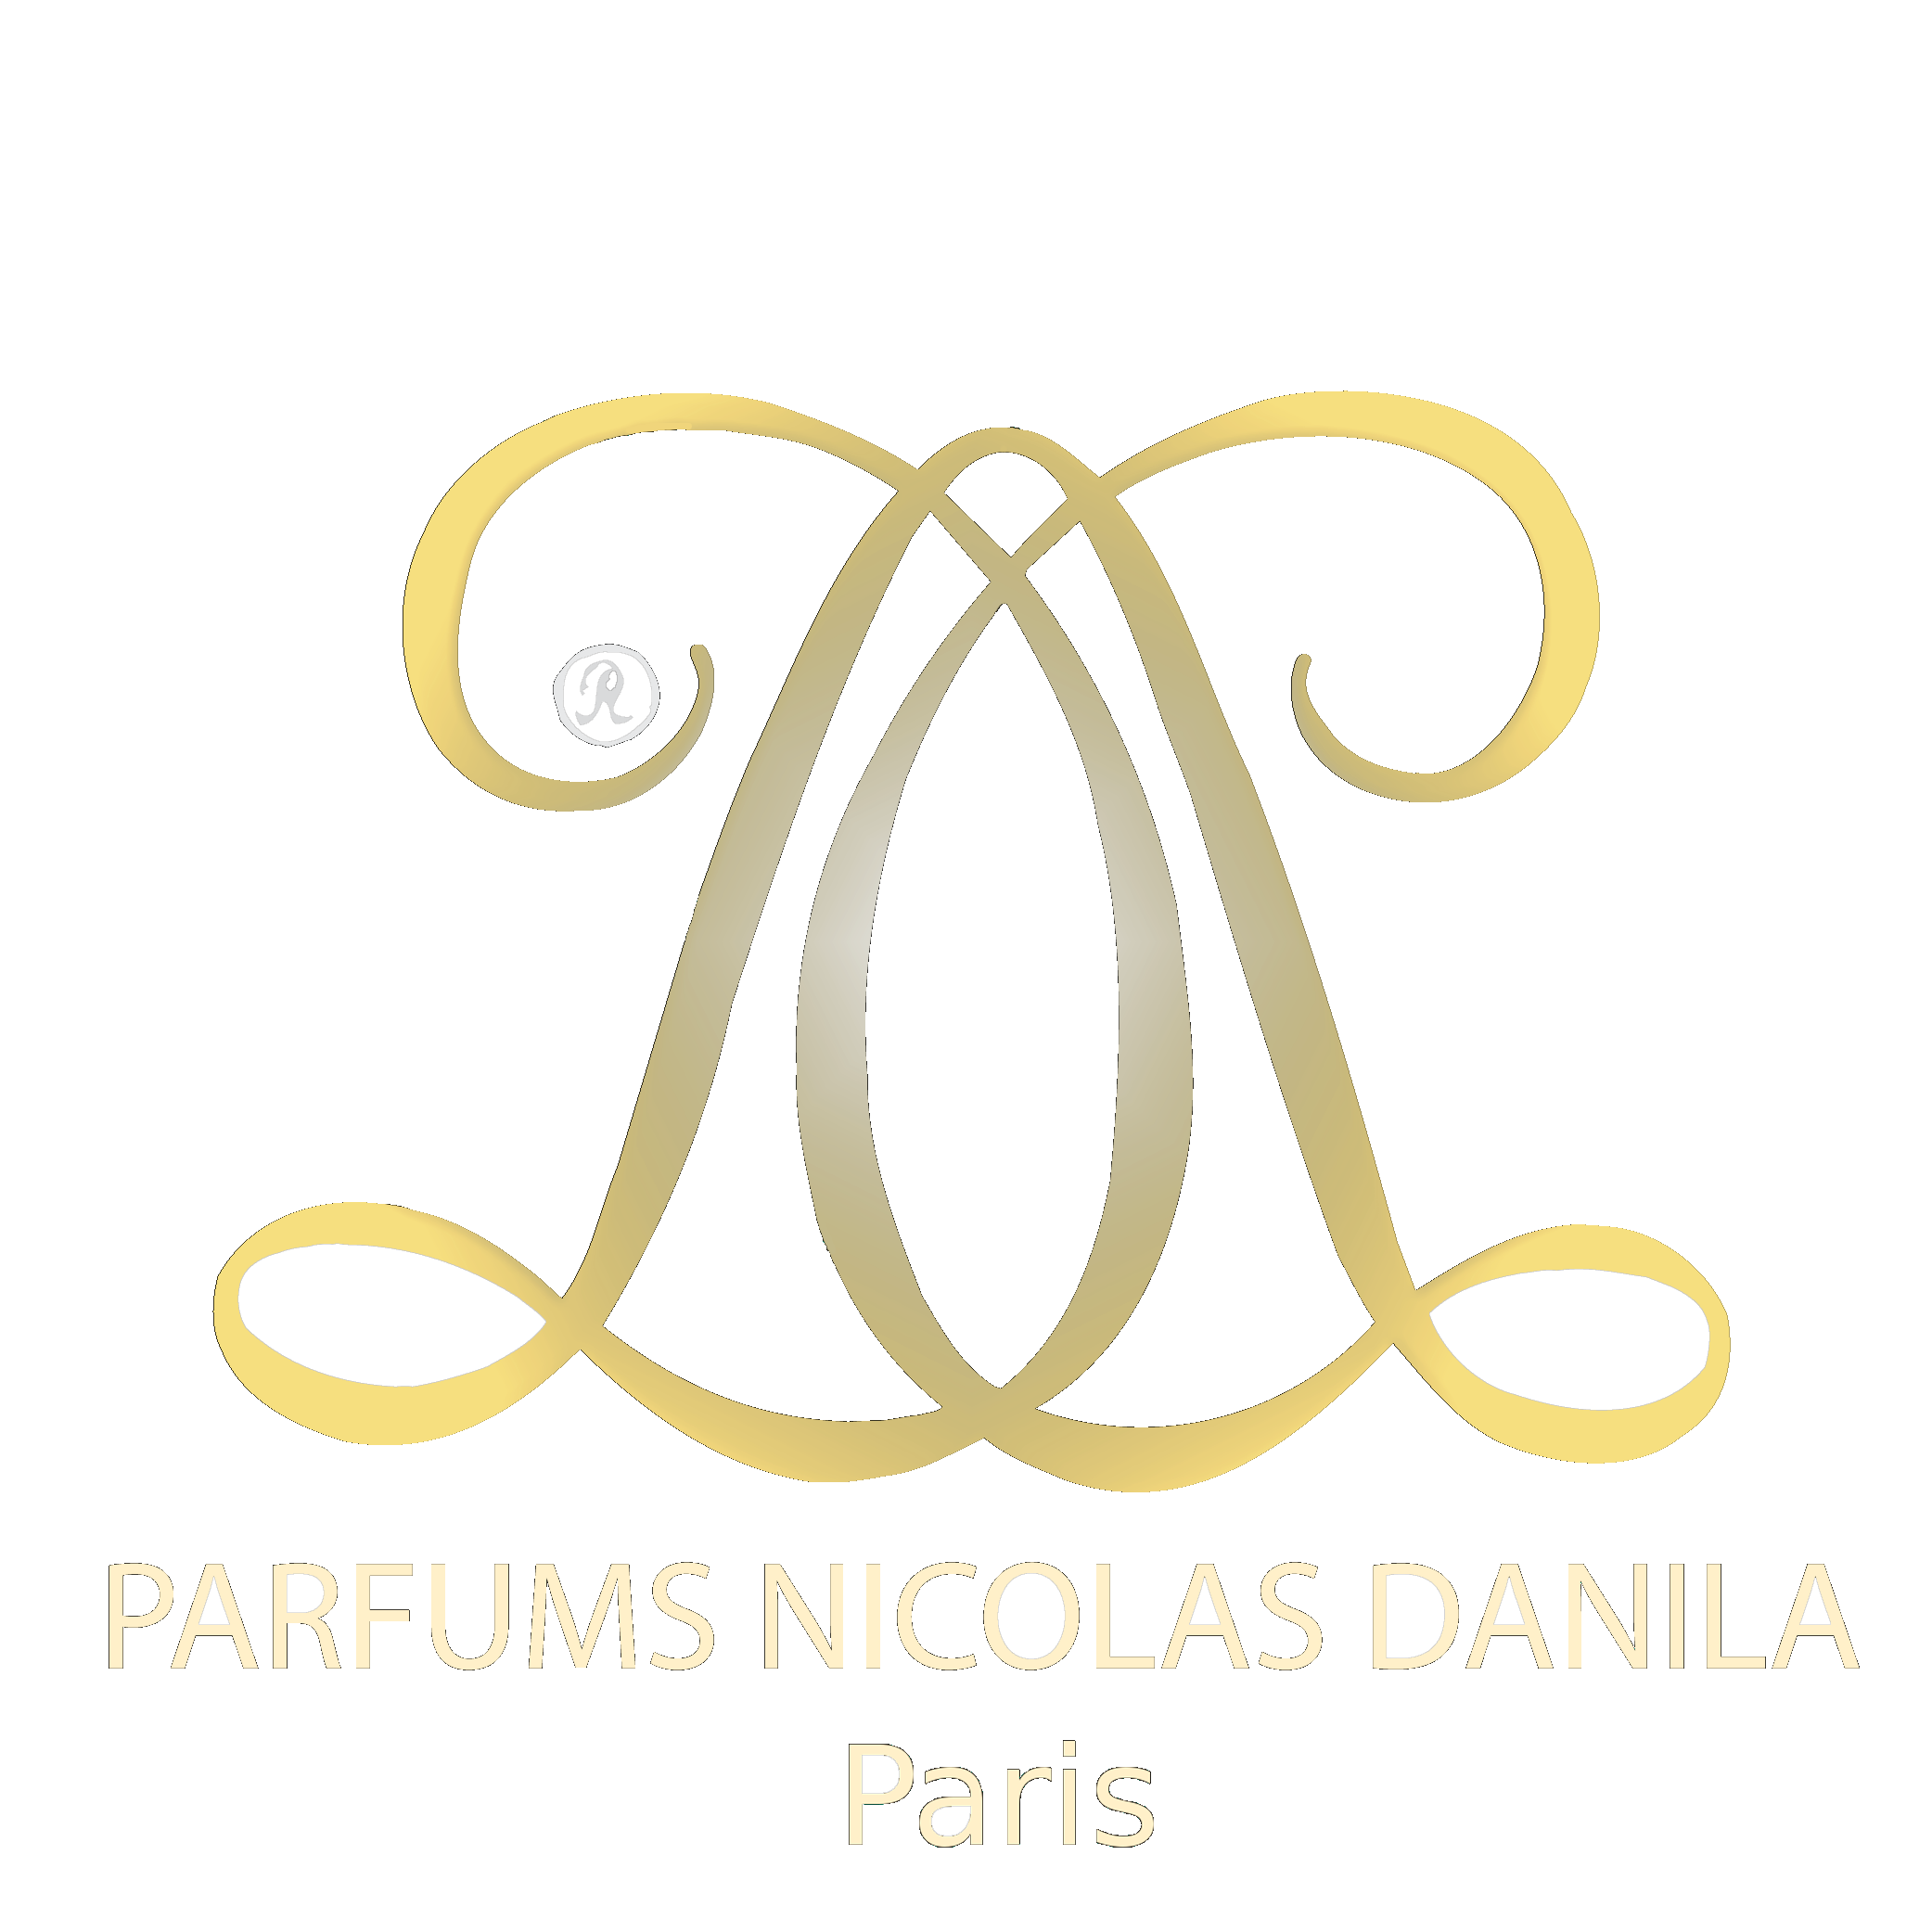 Parfums Nicolas Danila